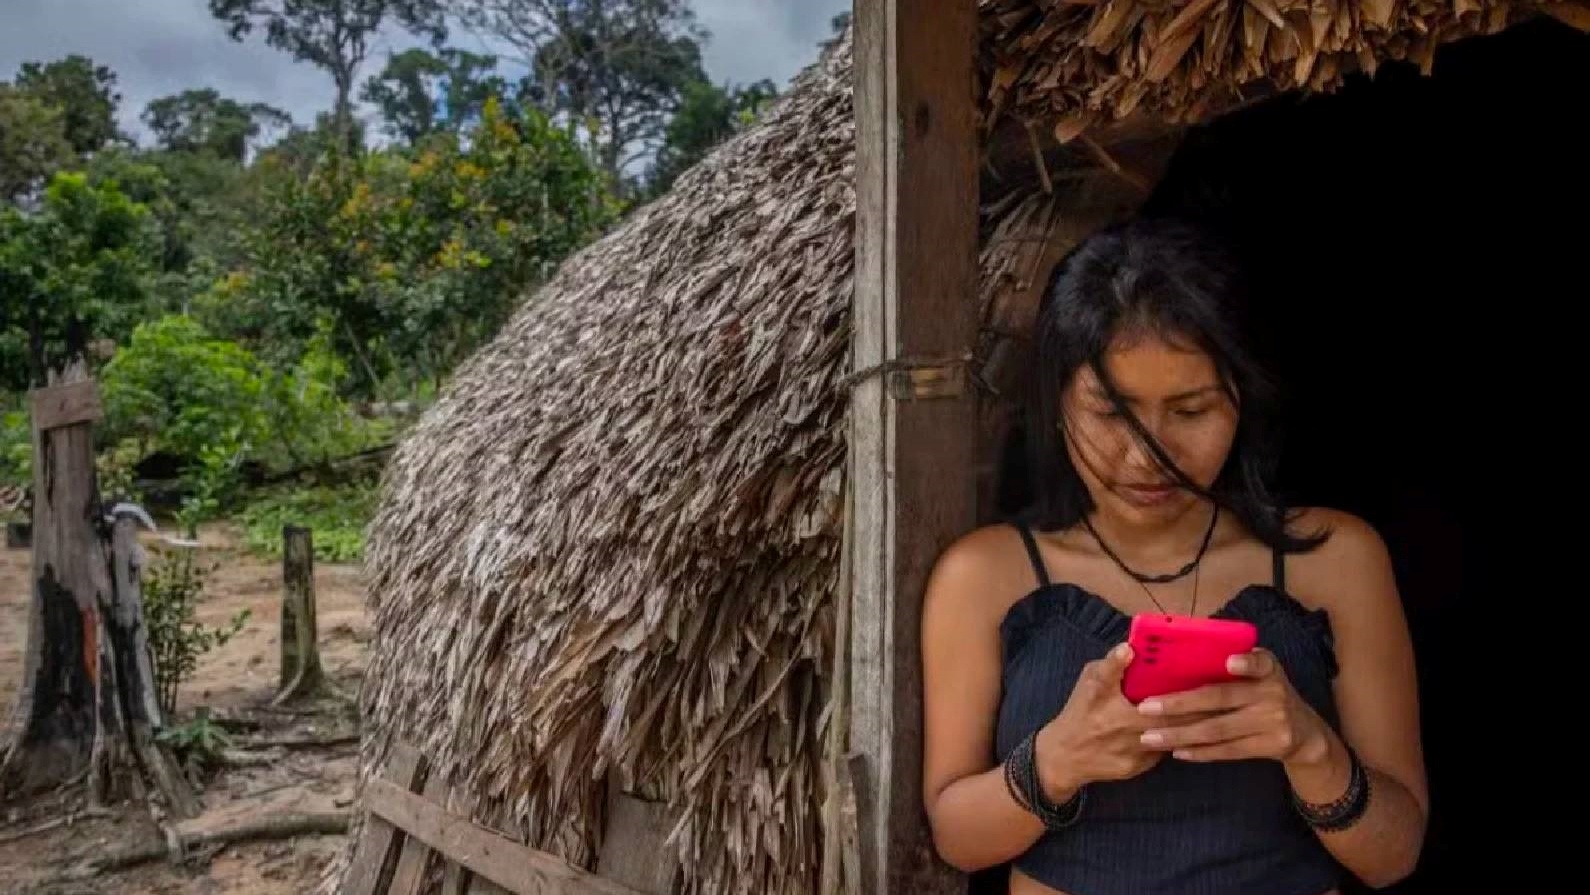 الشعب المعزول في غابات الأمازون تغيرت سلوكياته بسبب الانترنت